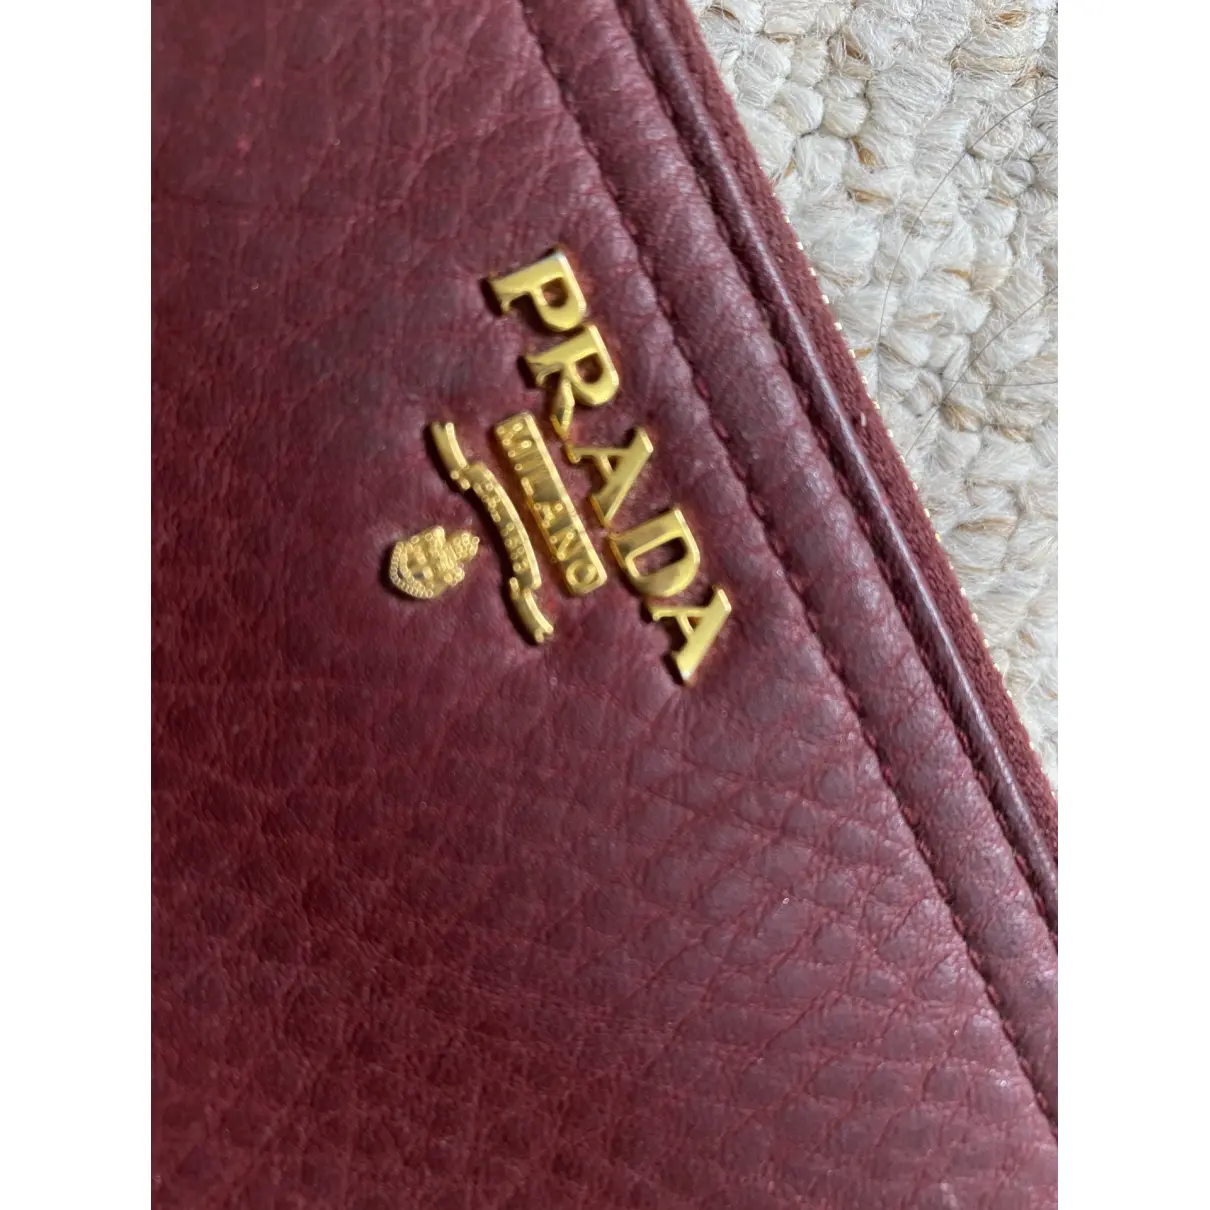 Buy Prada Leather wallet online